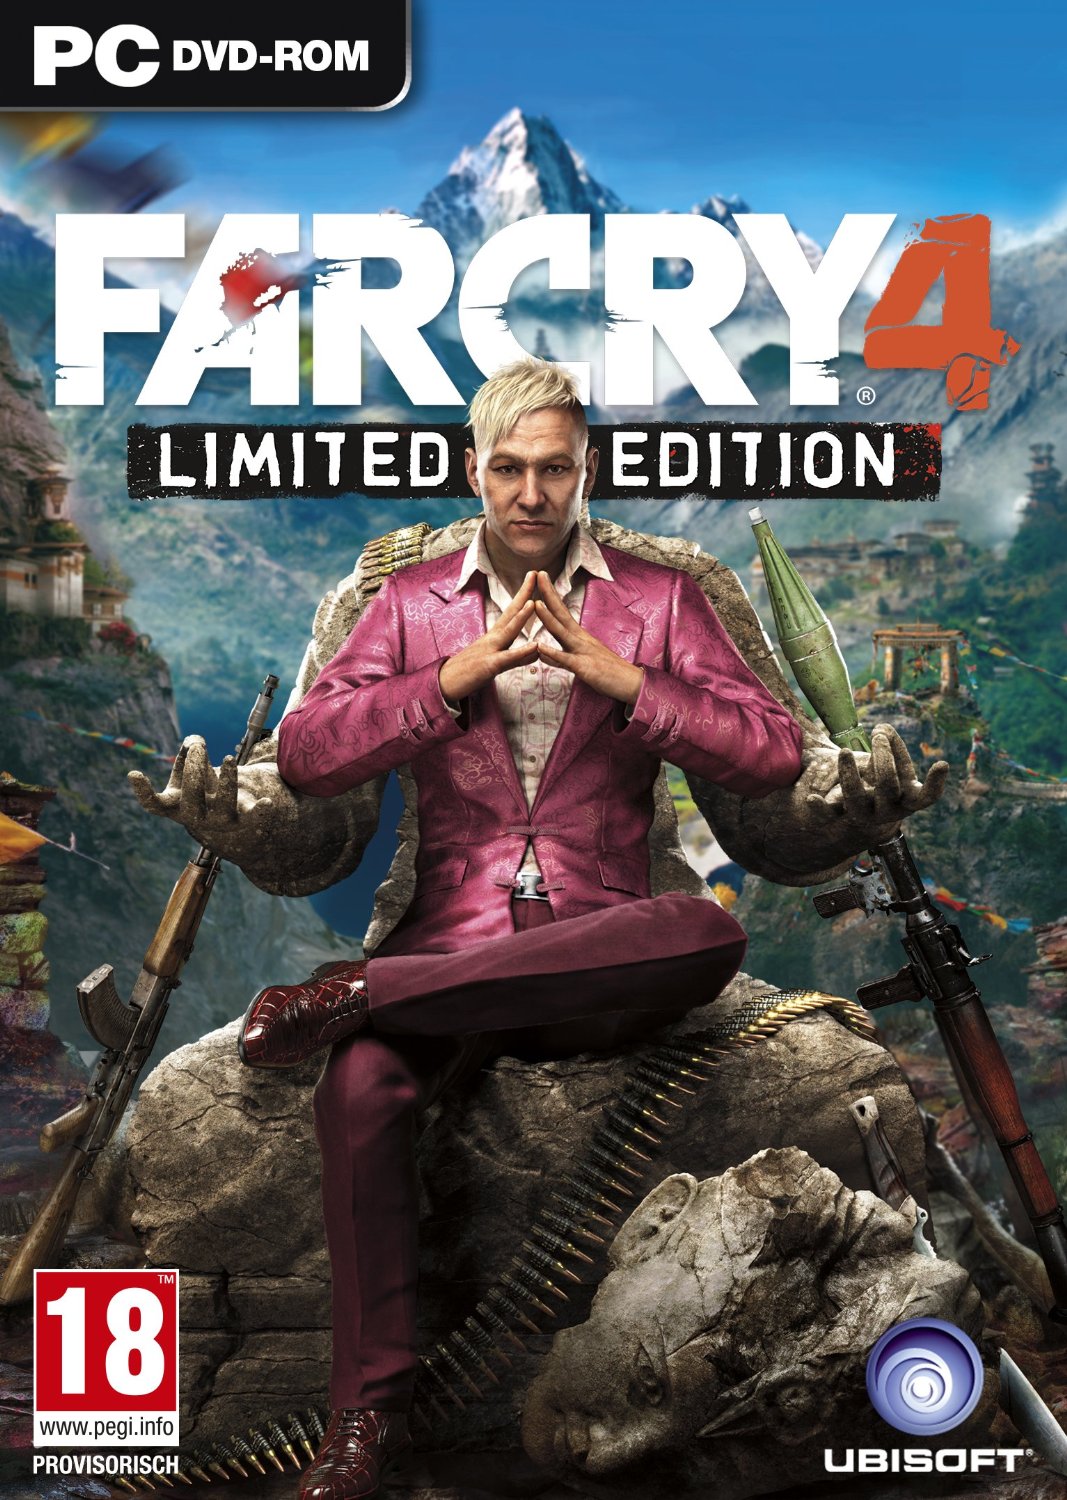 Far Cry 4: Escape from Durgesh Prison